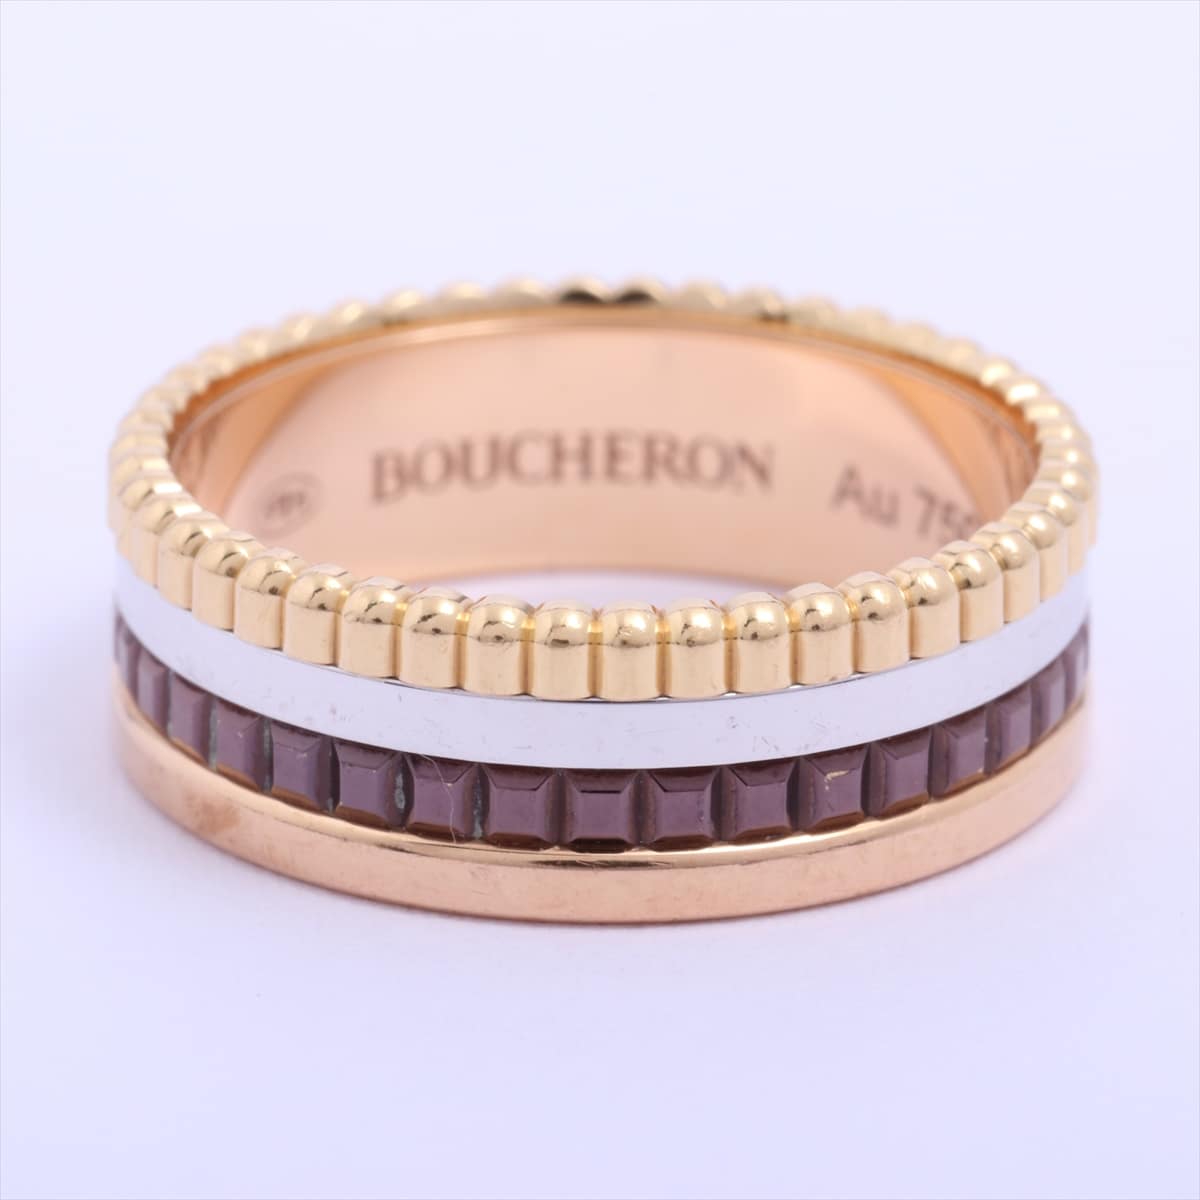 Boucheron Quatre small rings 750 YG×PG×WG 7.3g 55